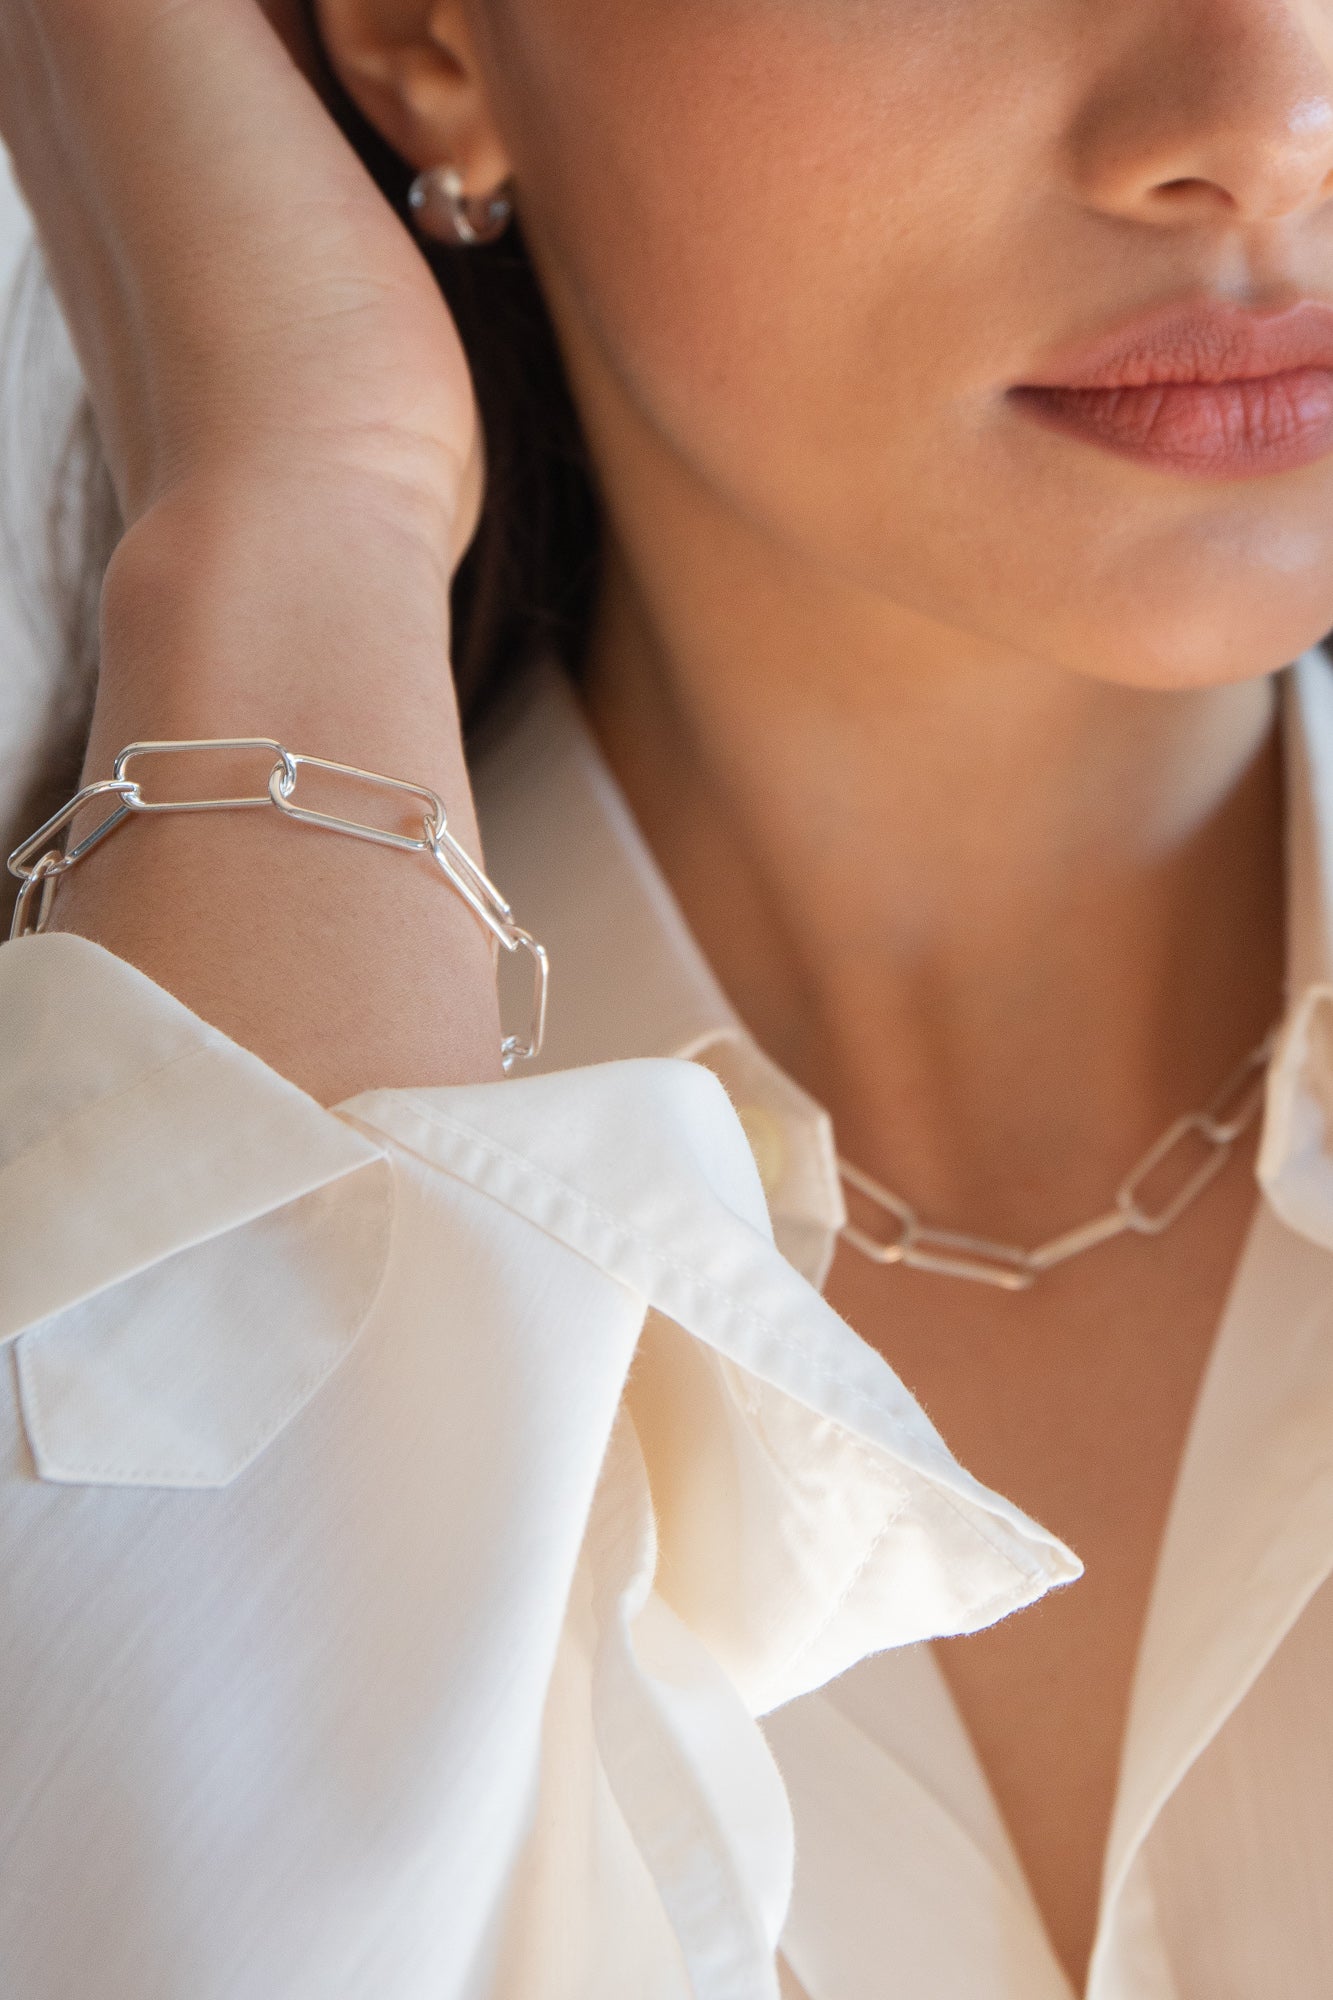 Flash Jewellery Eight Chain Bracelet in Sterling Silver On model